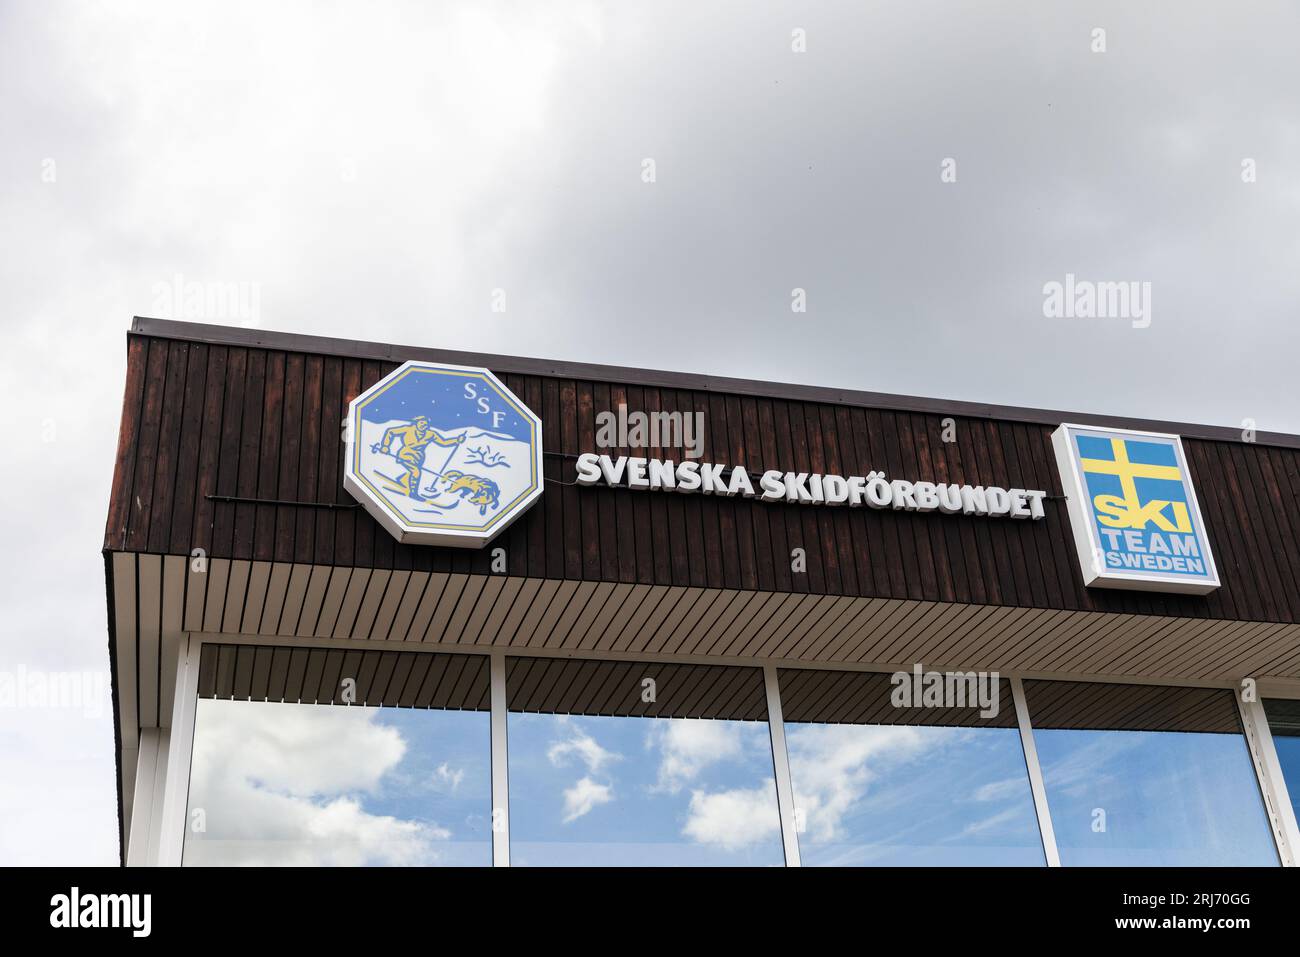 Insegne e simboli, sede della Sci Associazione svedese (svedese: Svenska Skidförbundet), che è un ente sportivo che governa lo sci in Svezia. Foto Stock